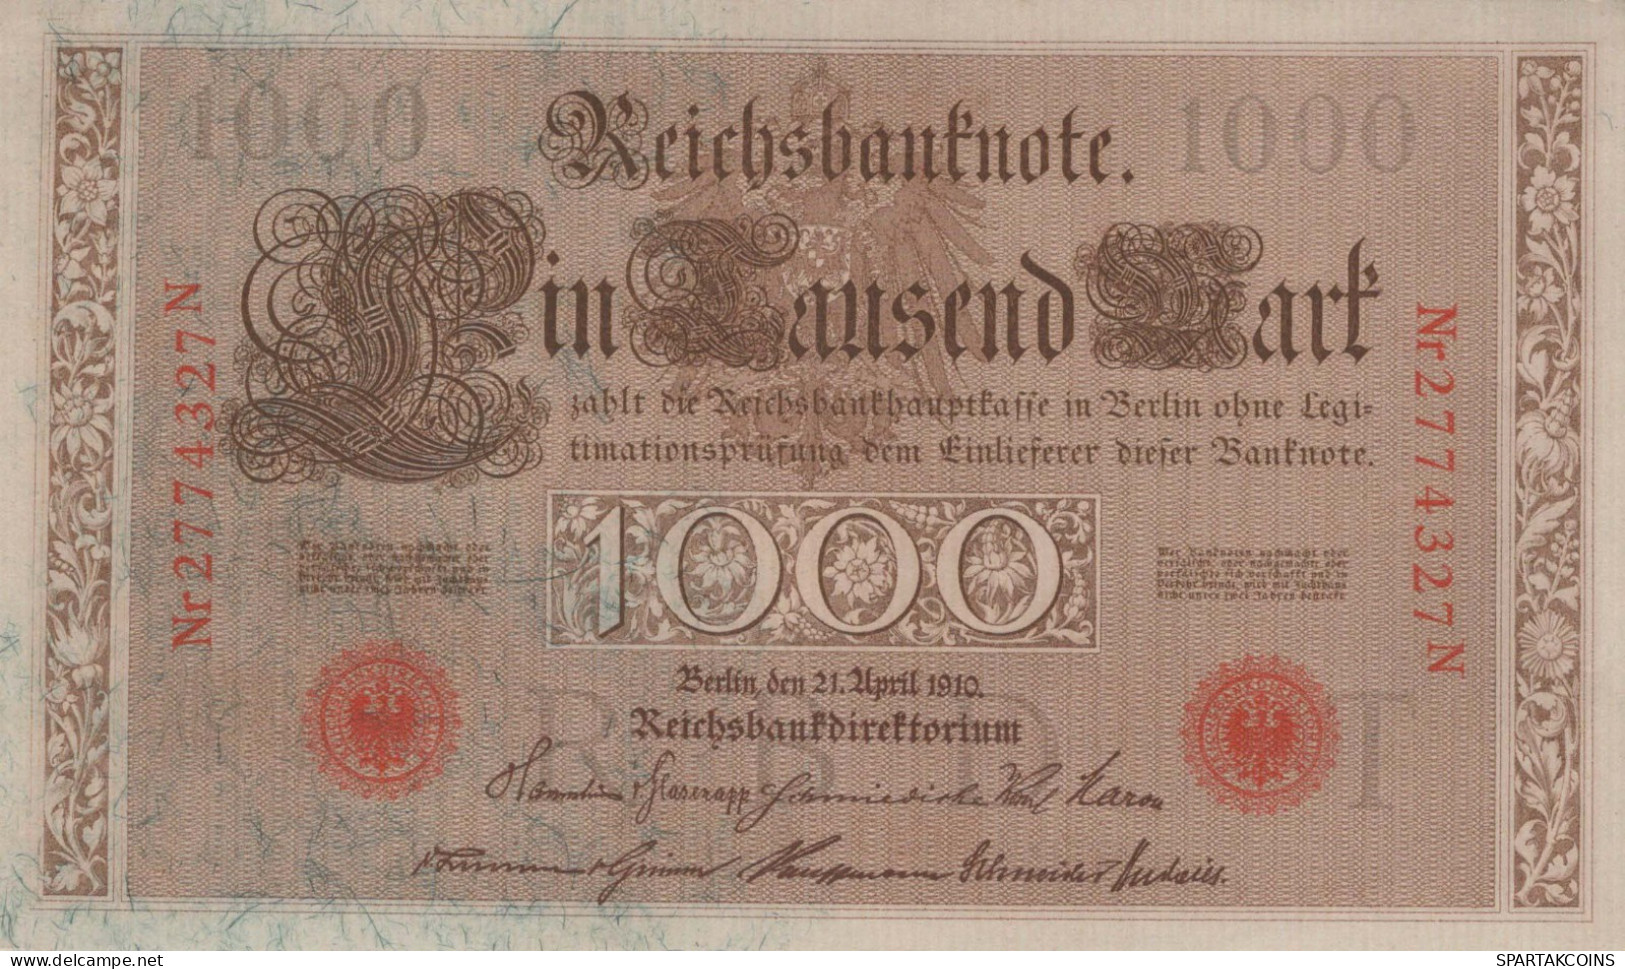 1000 MARK 1910 DEUTSCHLAND Papiergeld Banknote #PL337 - [11] Lokale Uitgaven